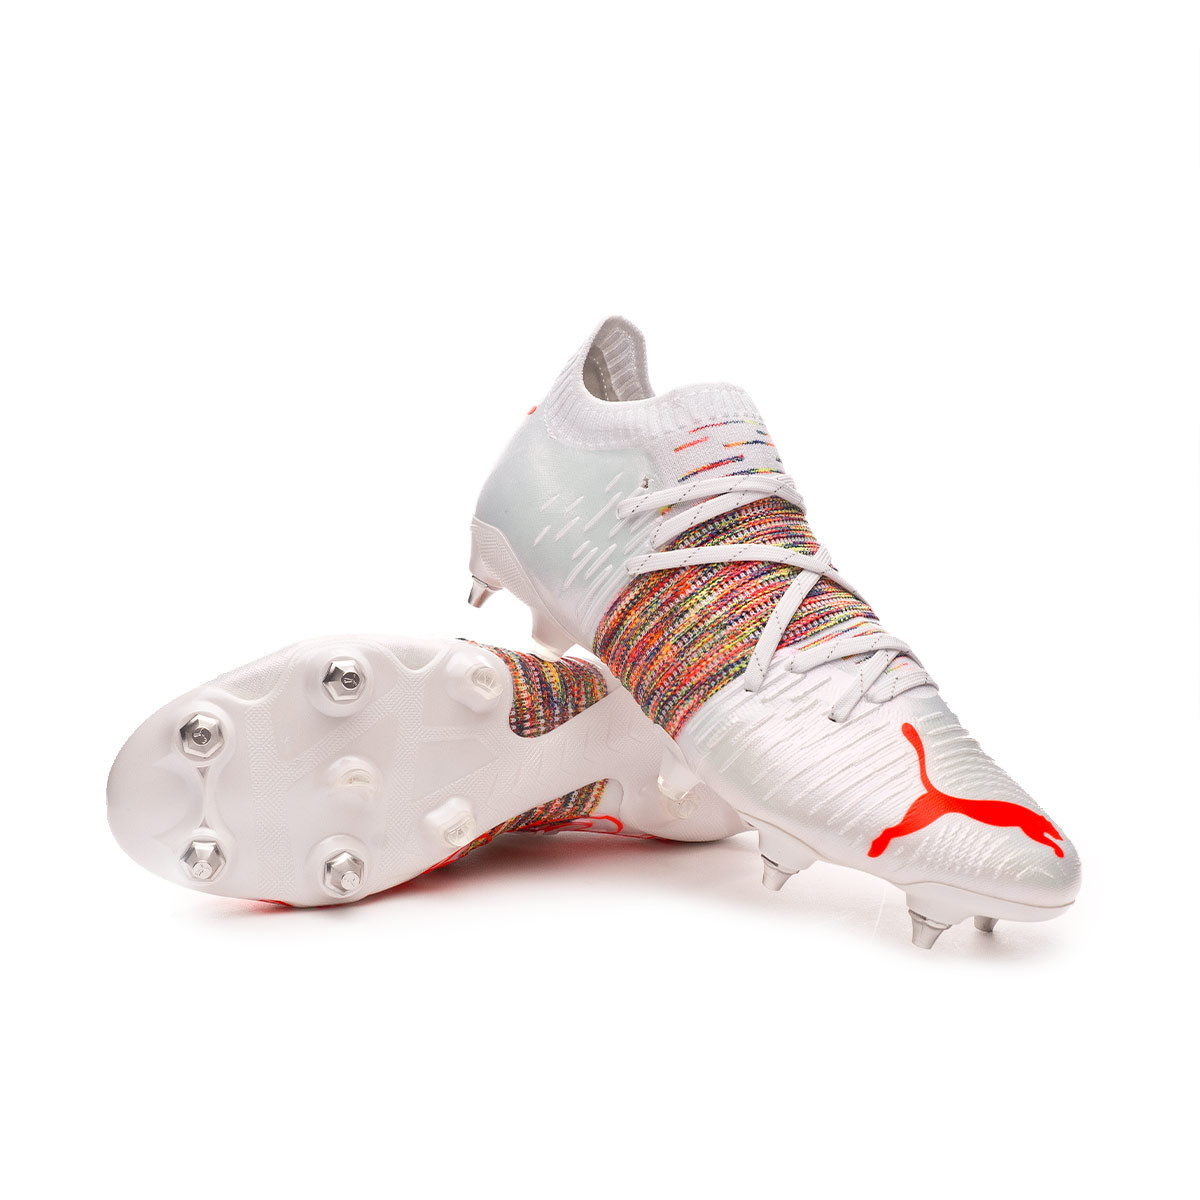 Football Boots Puma Future Z 1.1 MxSG 